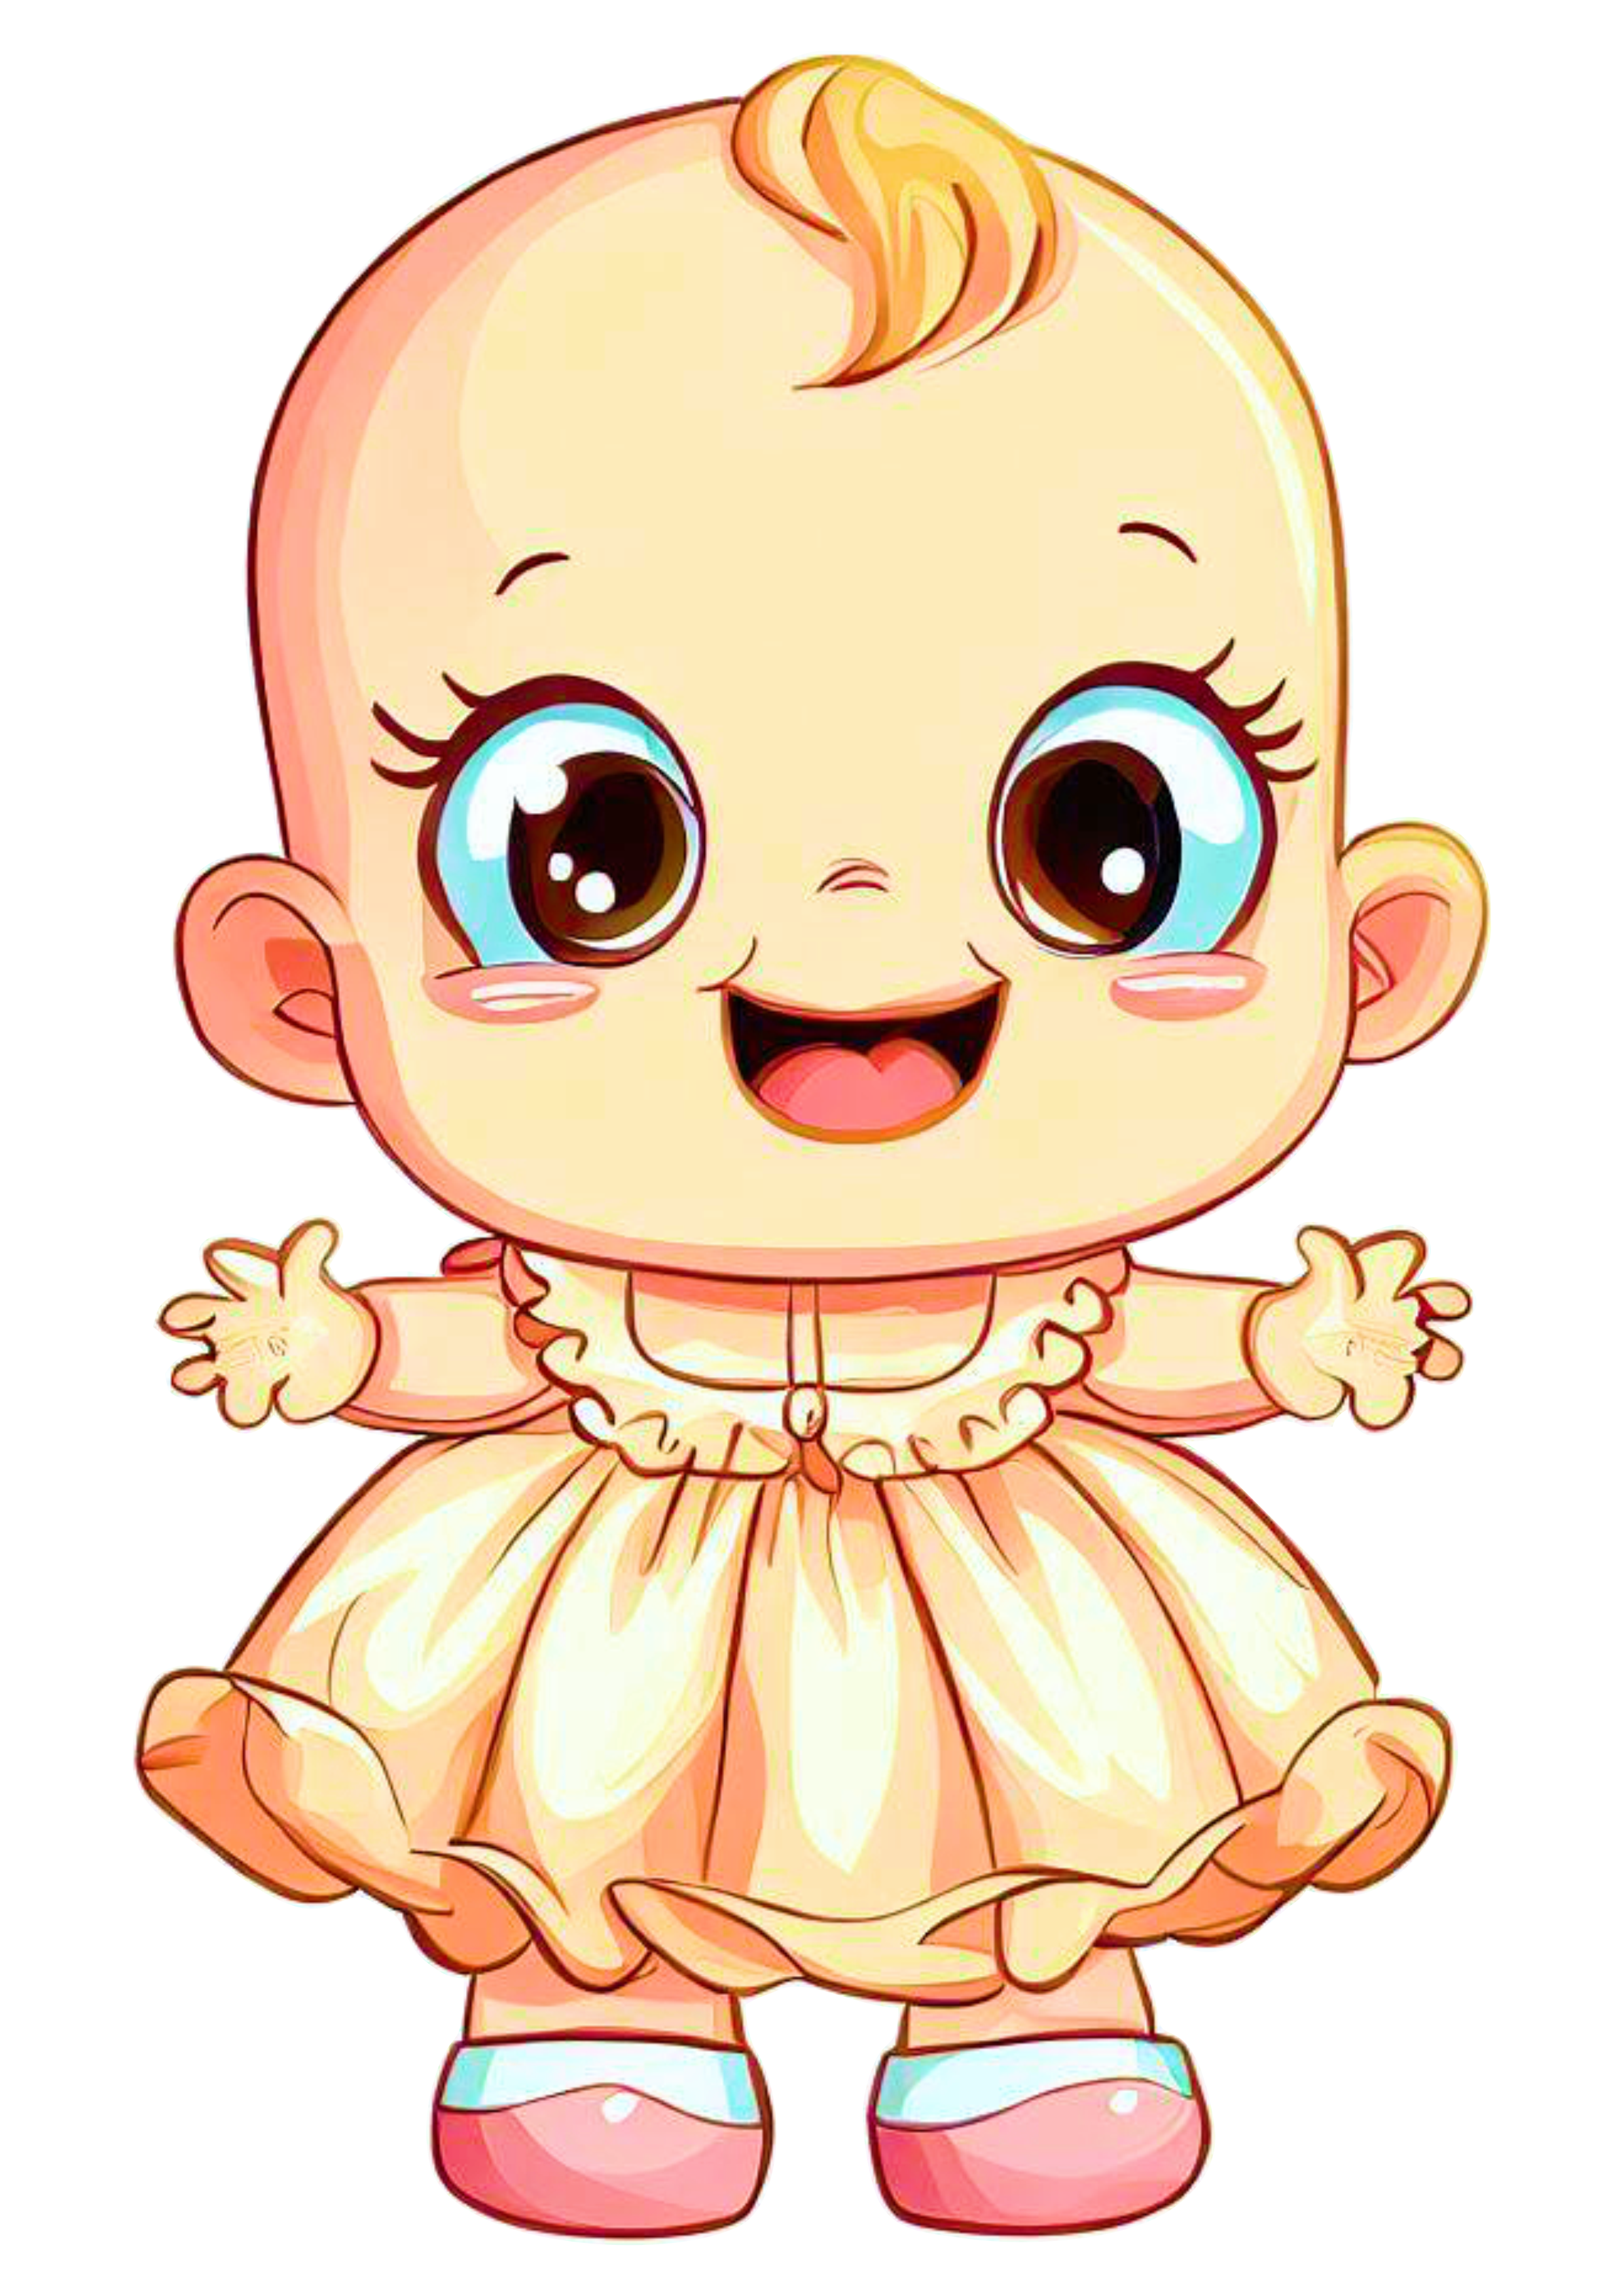 Bebê fofinho neném menina rindo roupinha de batizado desenho simples carequinha cabeçudo sapeca baby imagem sem fundo png